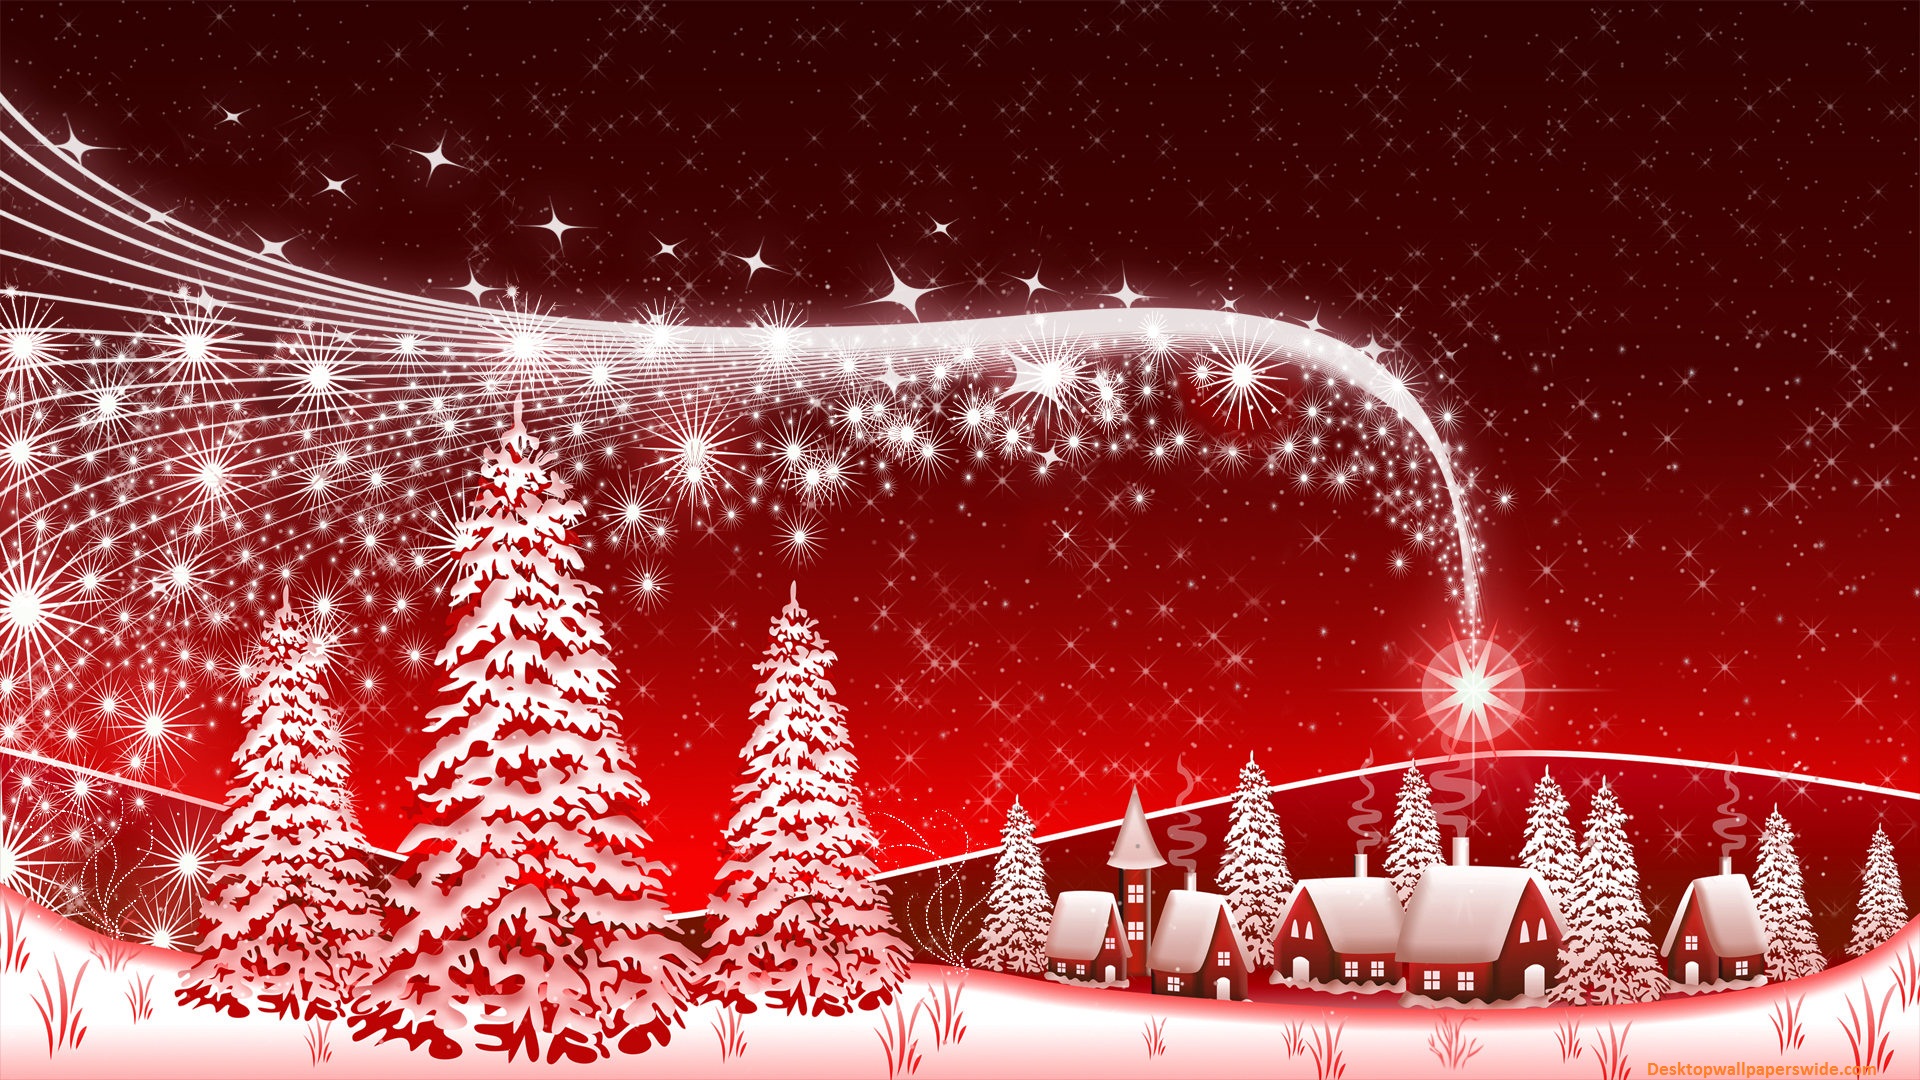 Merry Christmas 2013 Download christmas pics 1920x1080